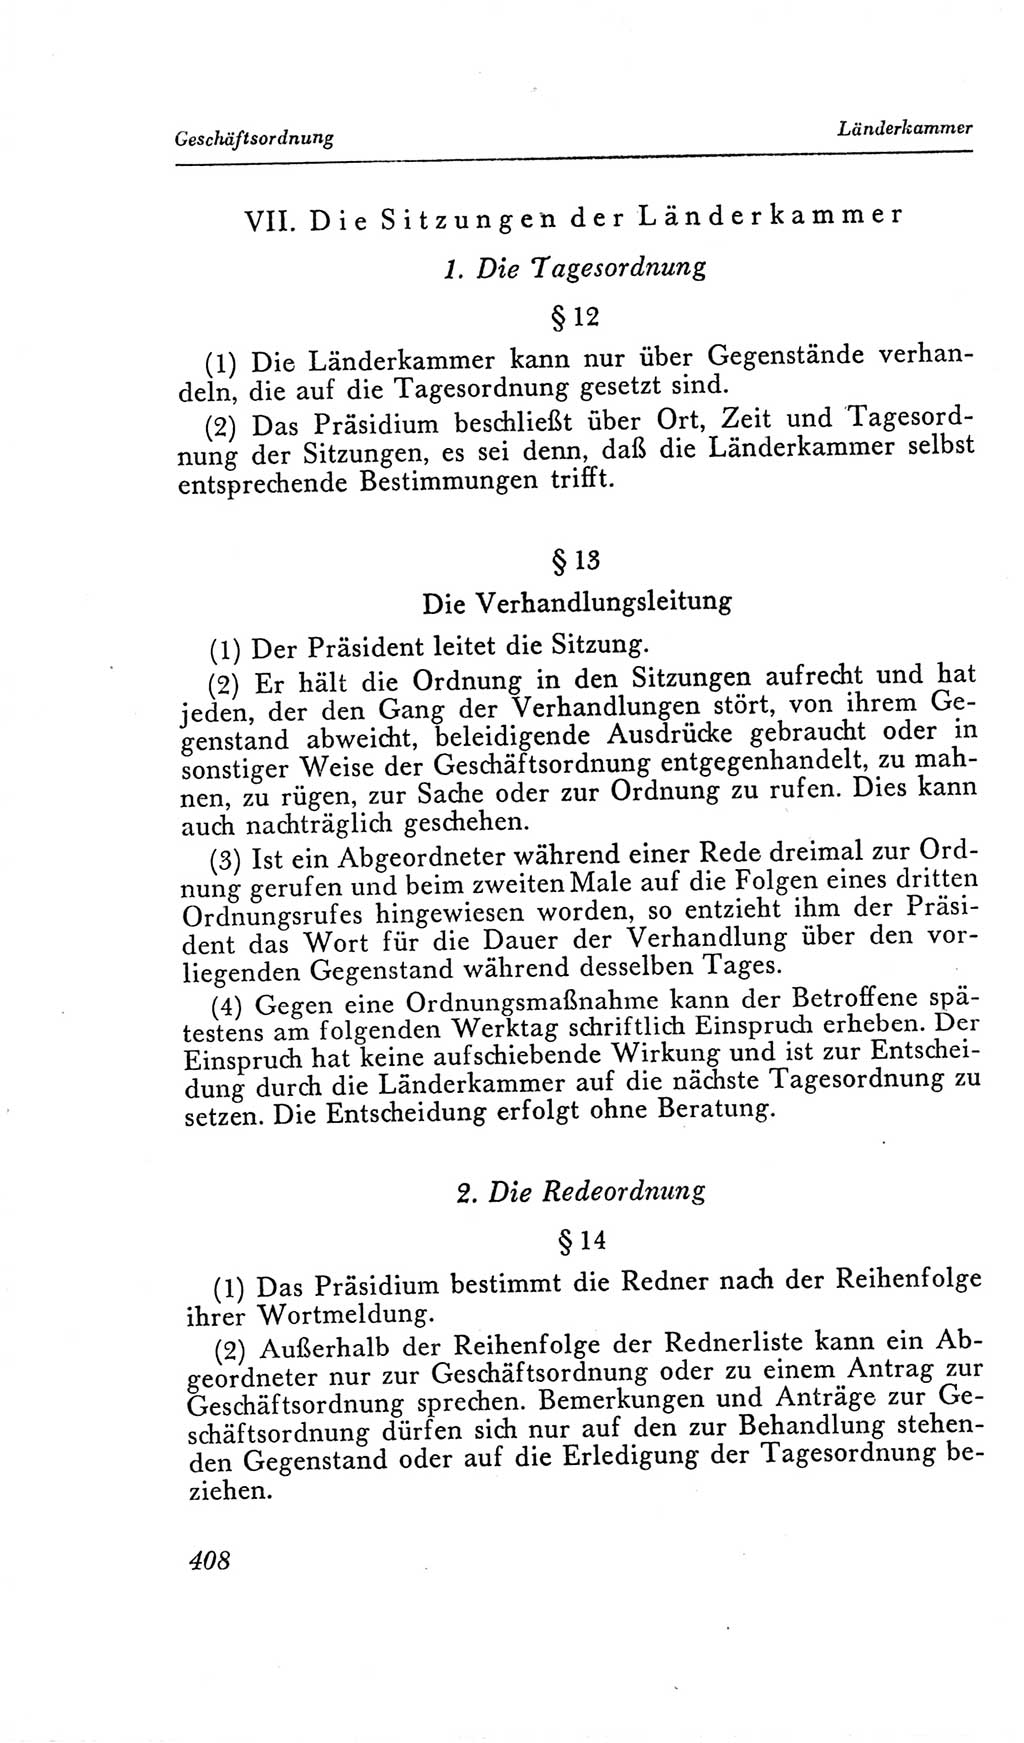 Handbuch der Volkskammer (VK) der Deutschen Demokratischen Republik (DDR), 2. Wahlperiode 1954-1958, Seite 408 (Hdb. VK. DDR, 2. WP. 1954-1958, S. 408)